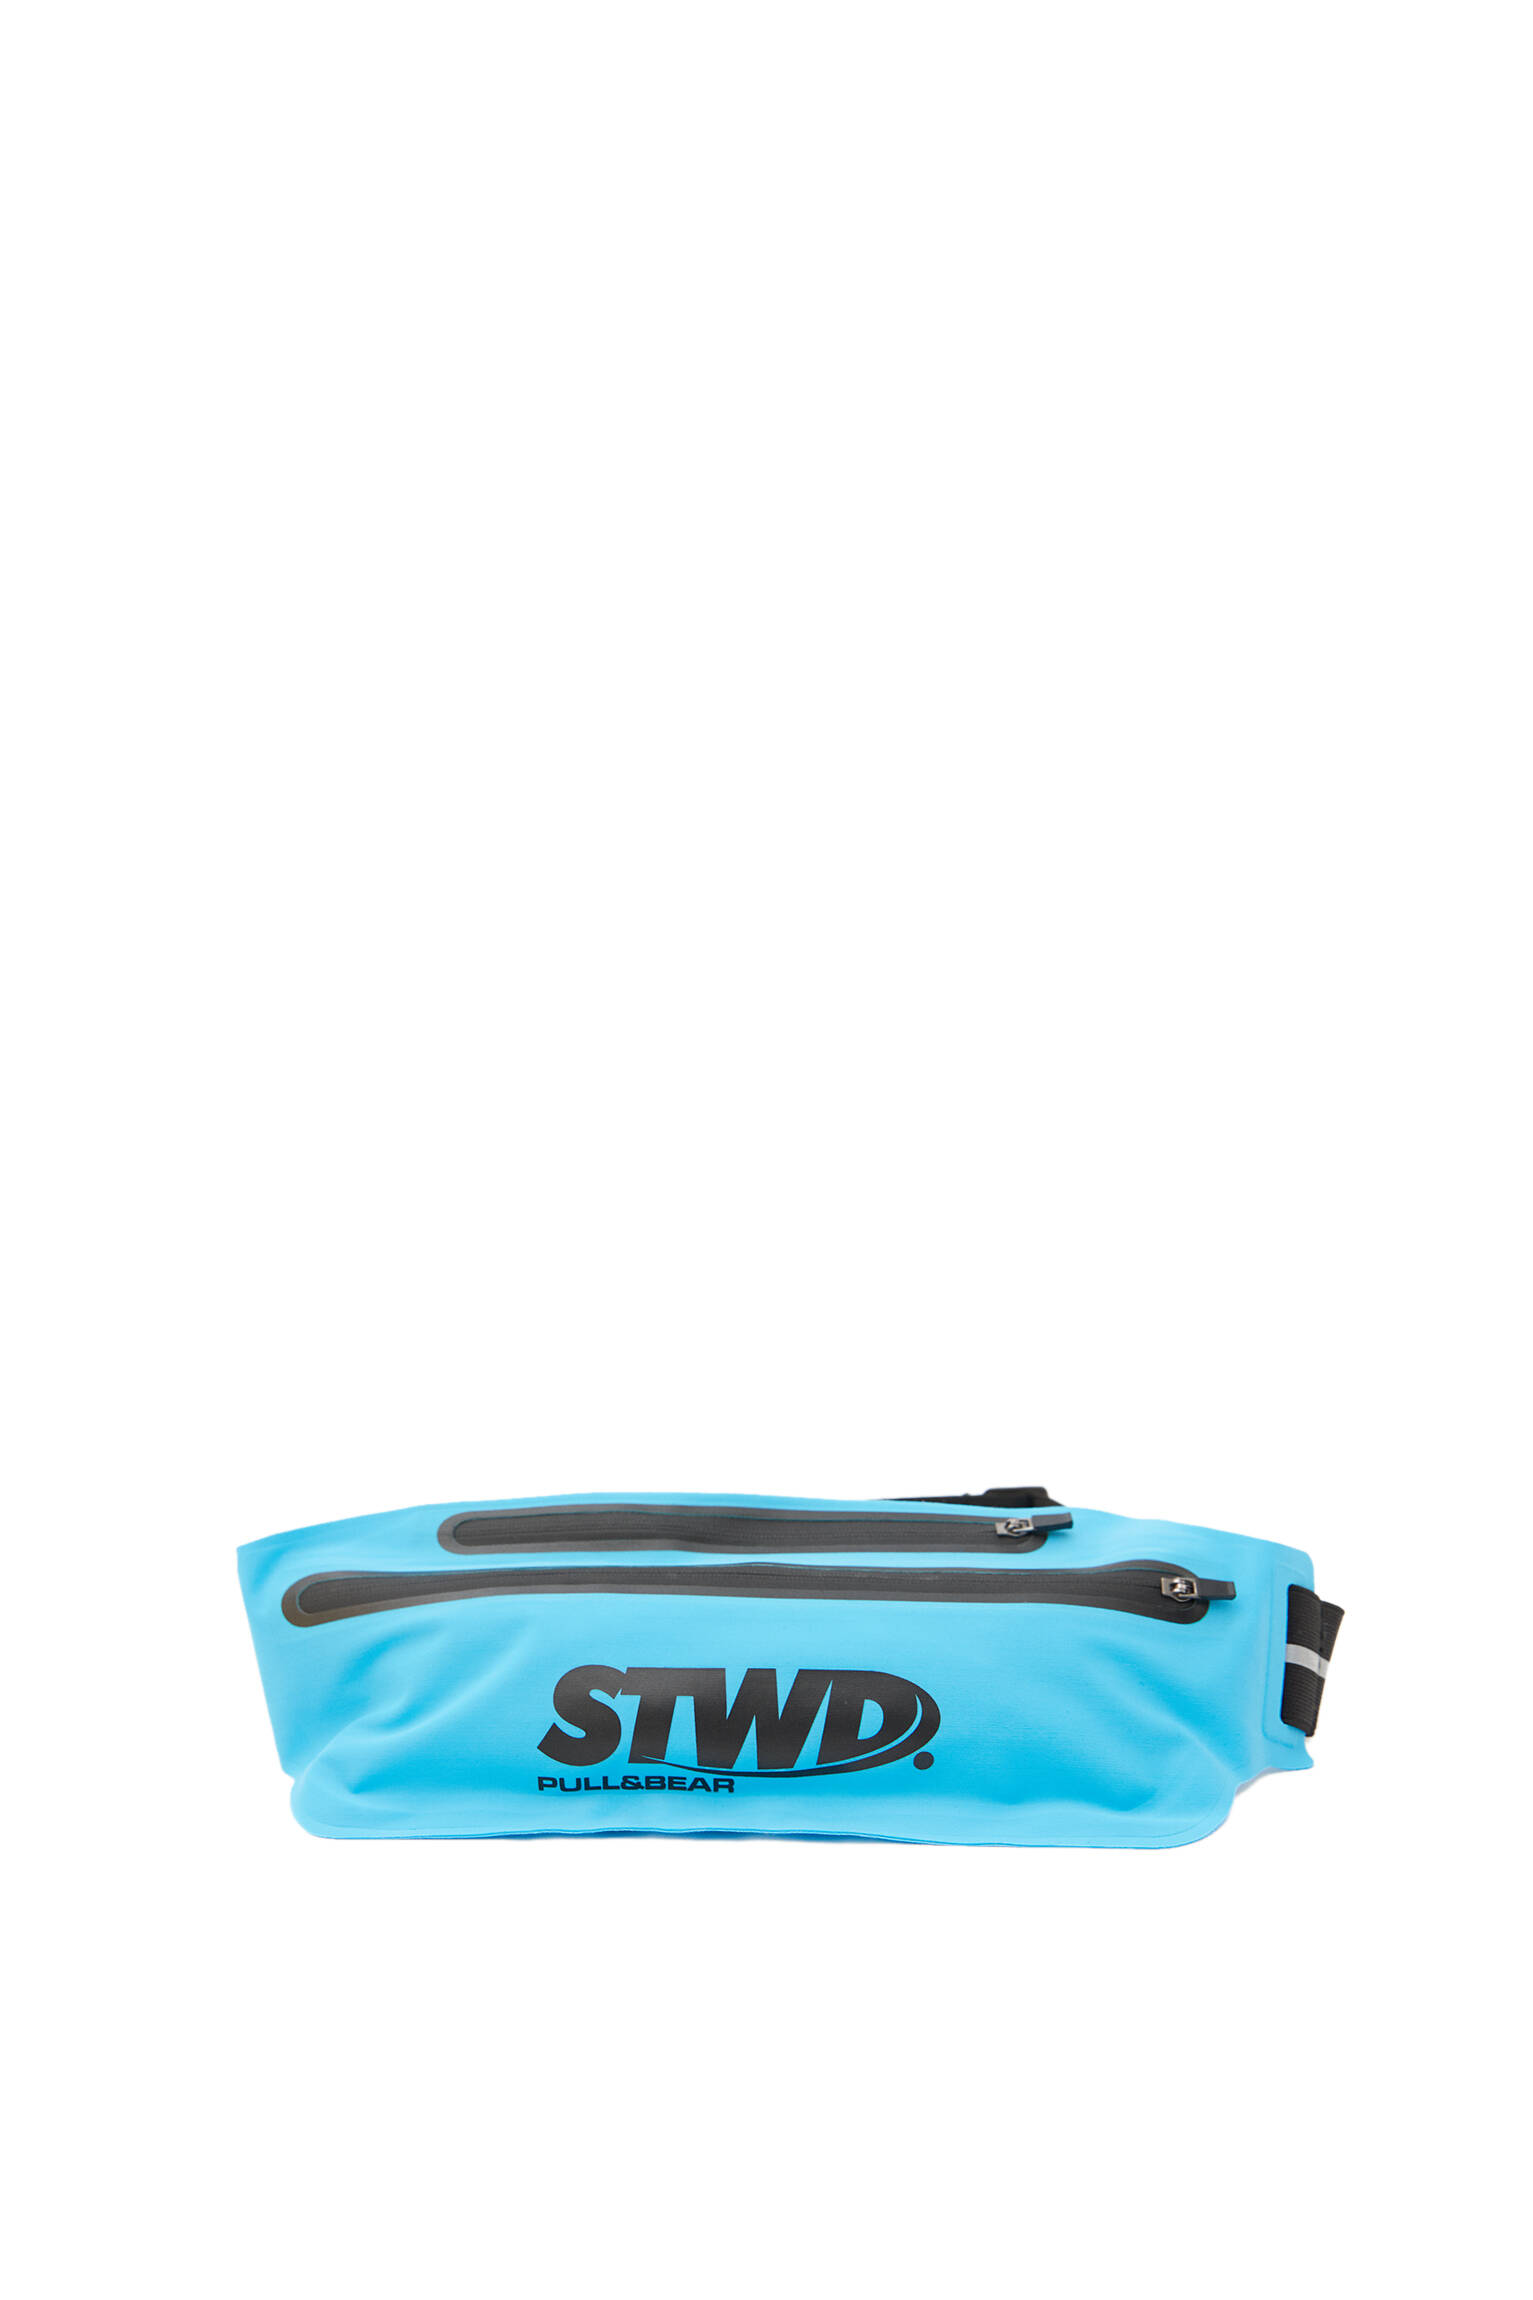 РАЗНЫЕ Синяя поясная сумка STWD Pull & Bear